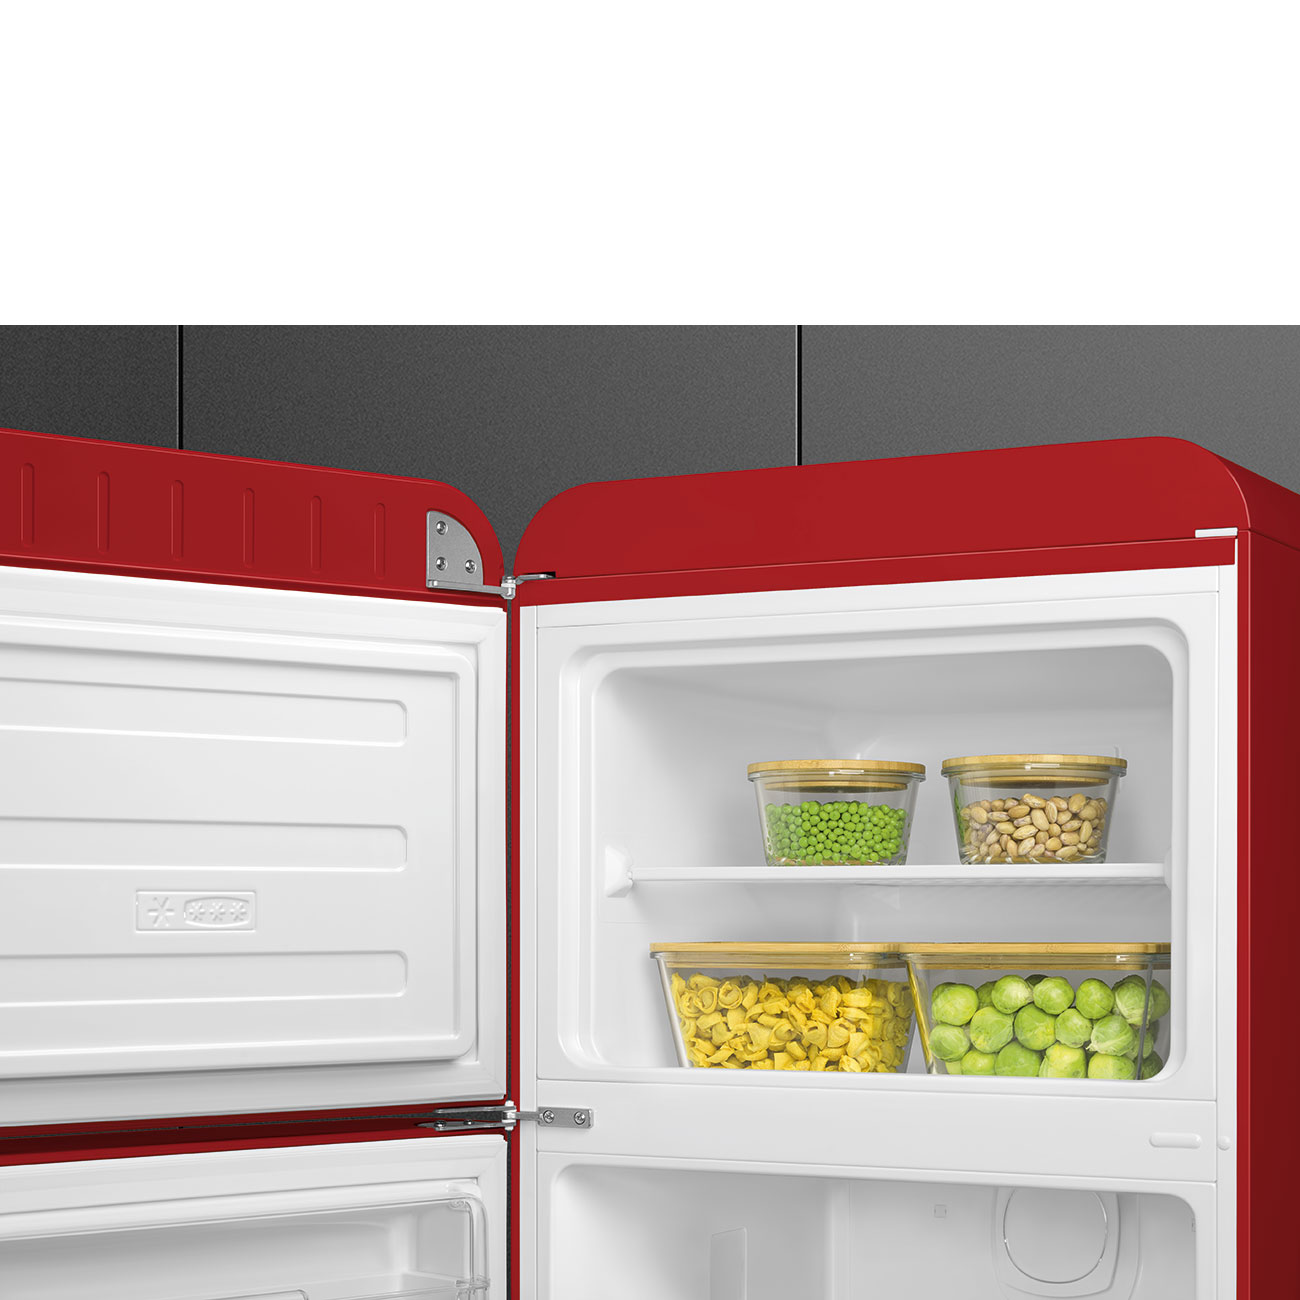 Red refrigerator - Smeg_4